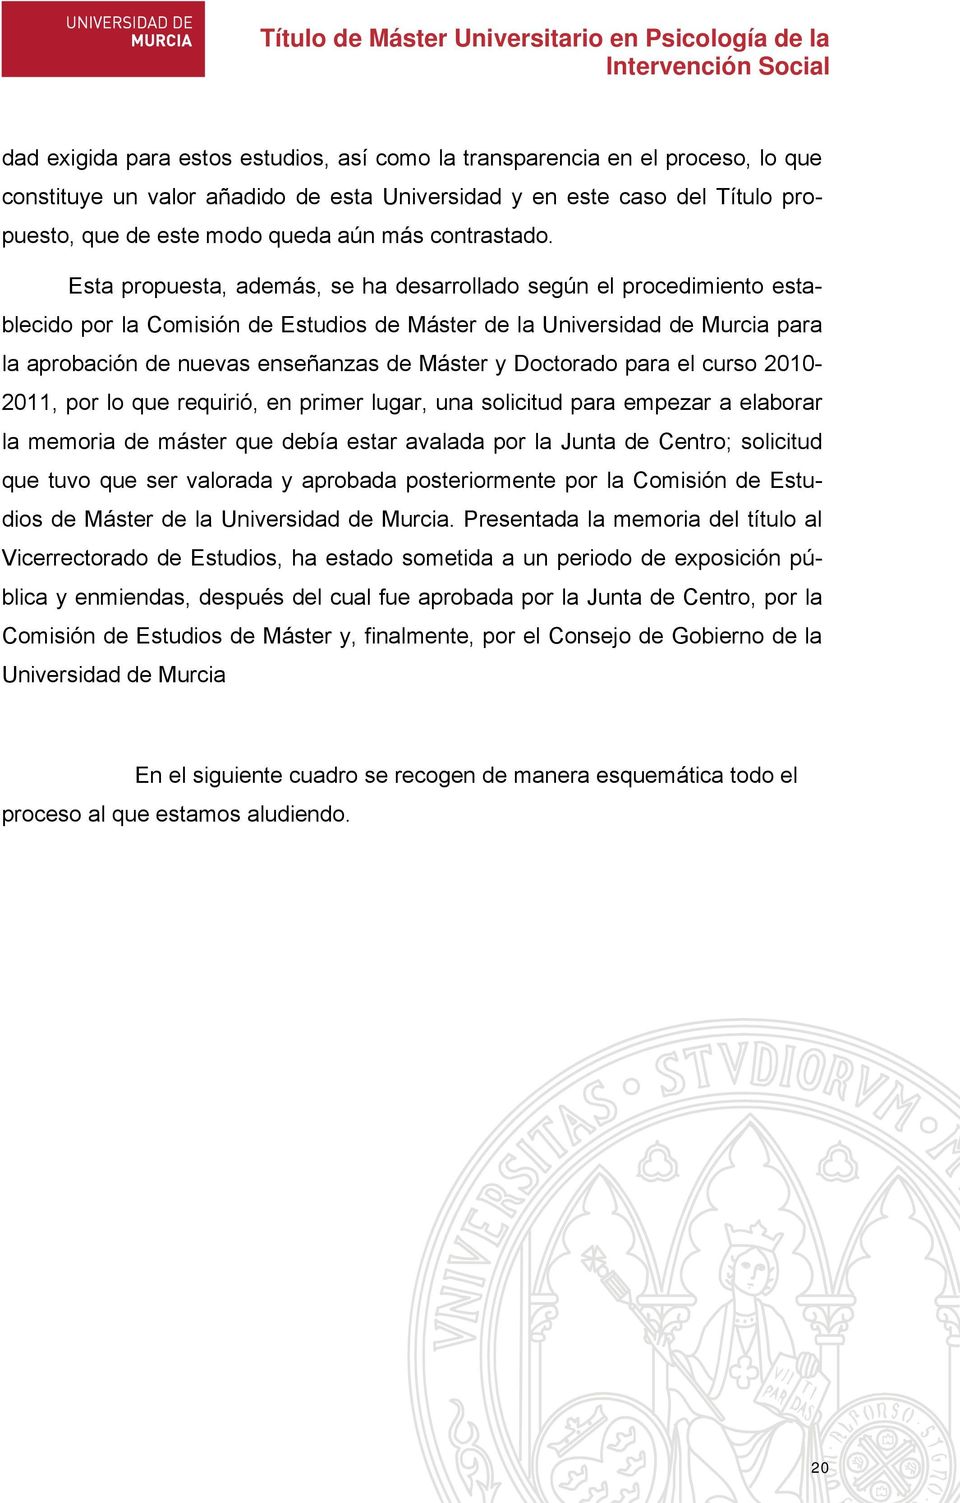 Esta propuesta, además, se ha desarrollado según el procedimiento establecido por la Comisión de Estudios de Máster de la Universidad de Murcia para la aprobación de nuevas enseñanzas de Máster y